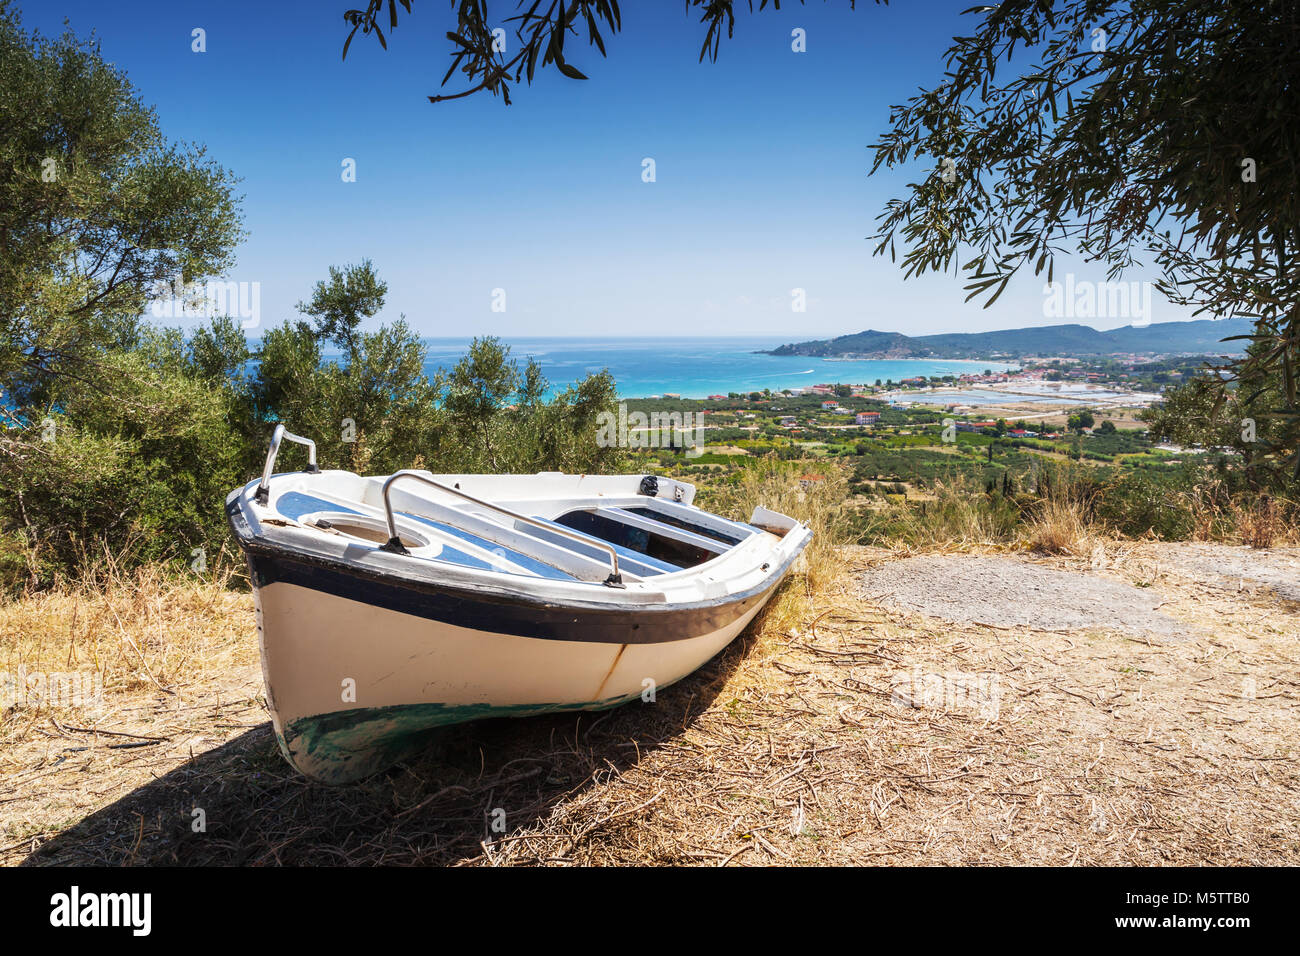 Old white fishing row boat on the coast. Summer landscape of Zakynthos island, Greece Stock Photo